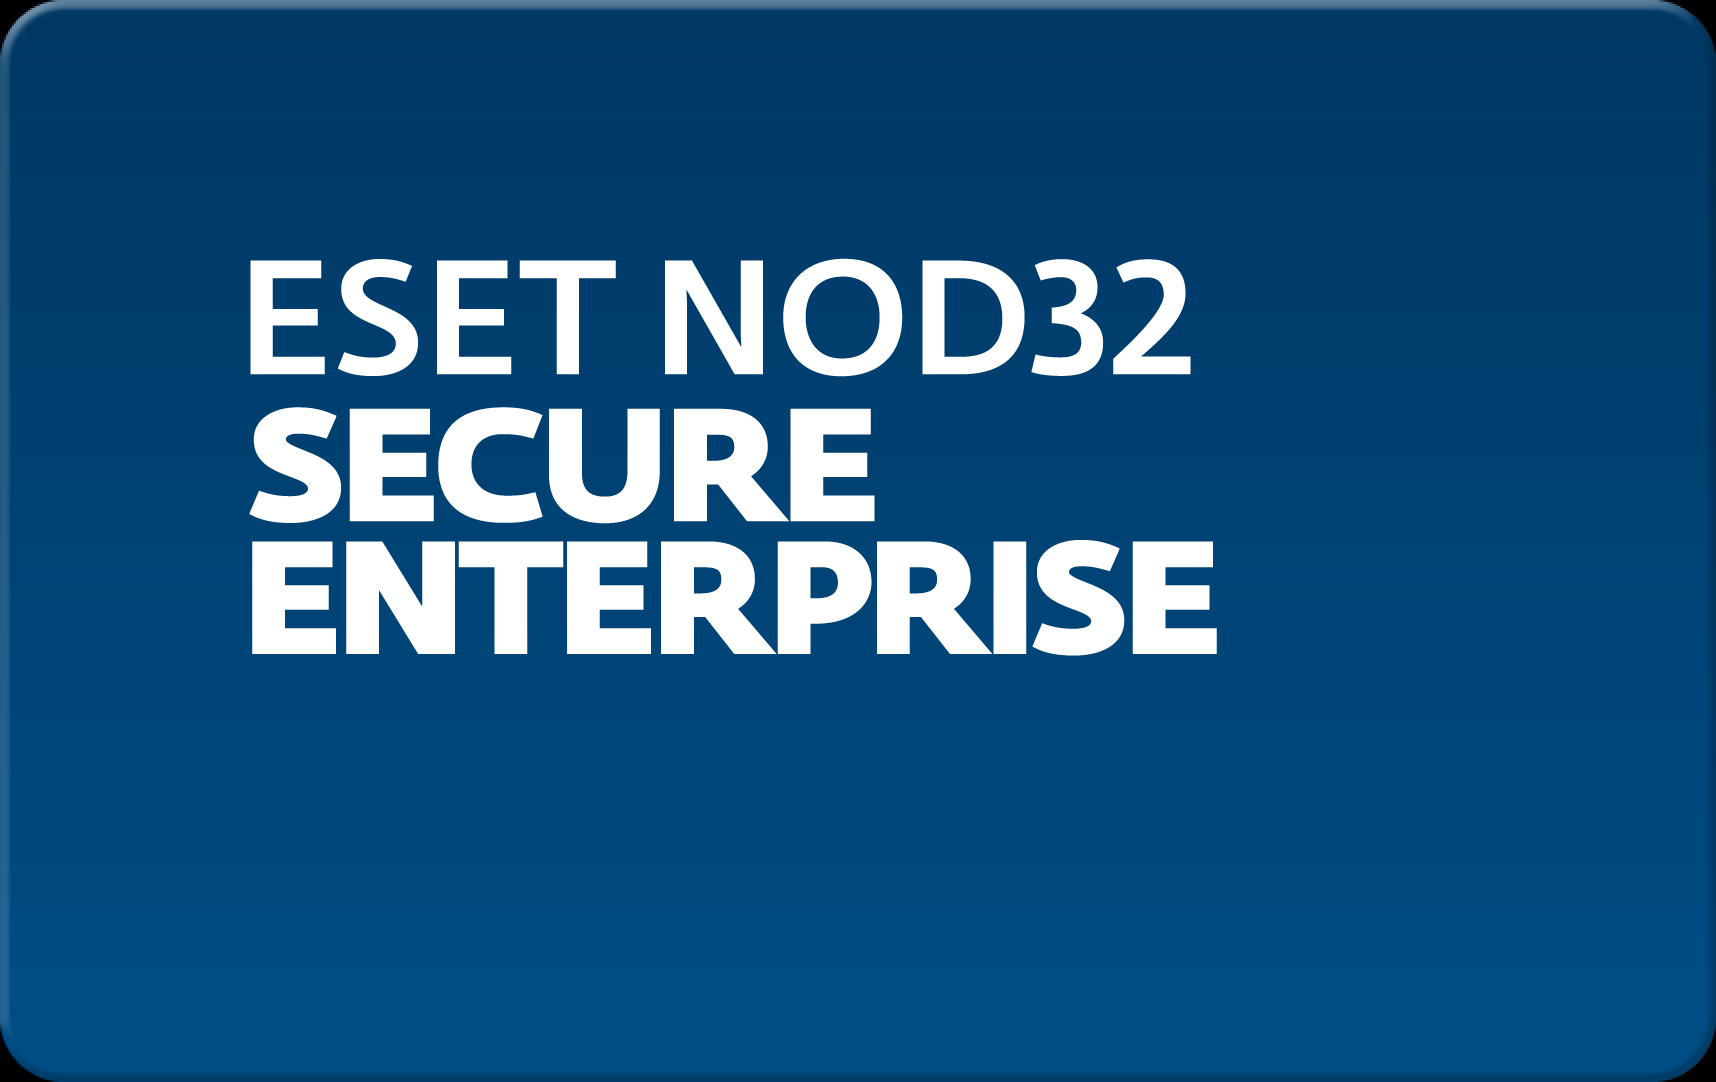        Eset NOD32 Secure Enterprise  162 